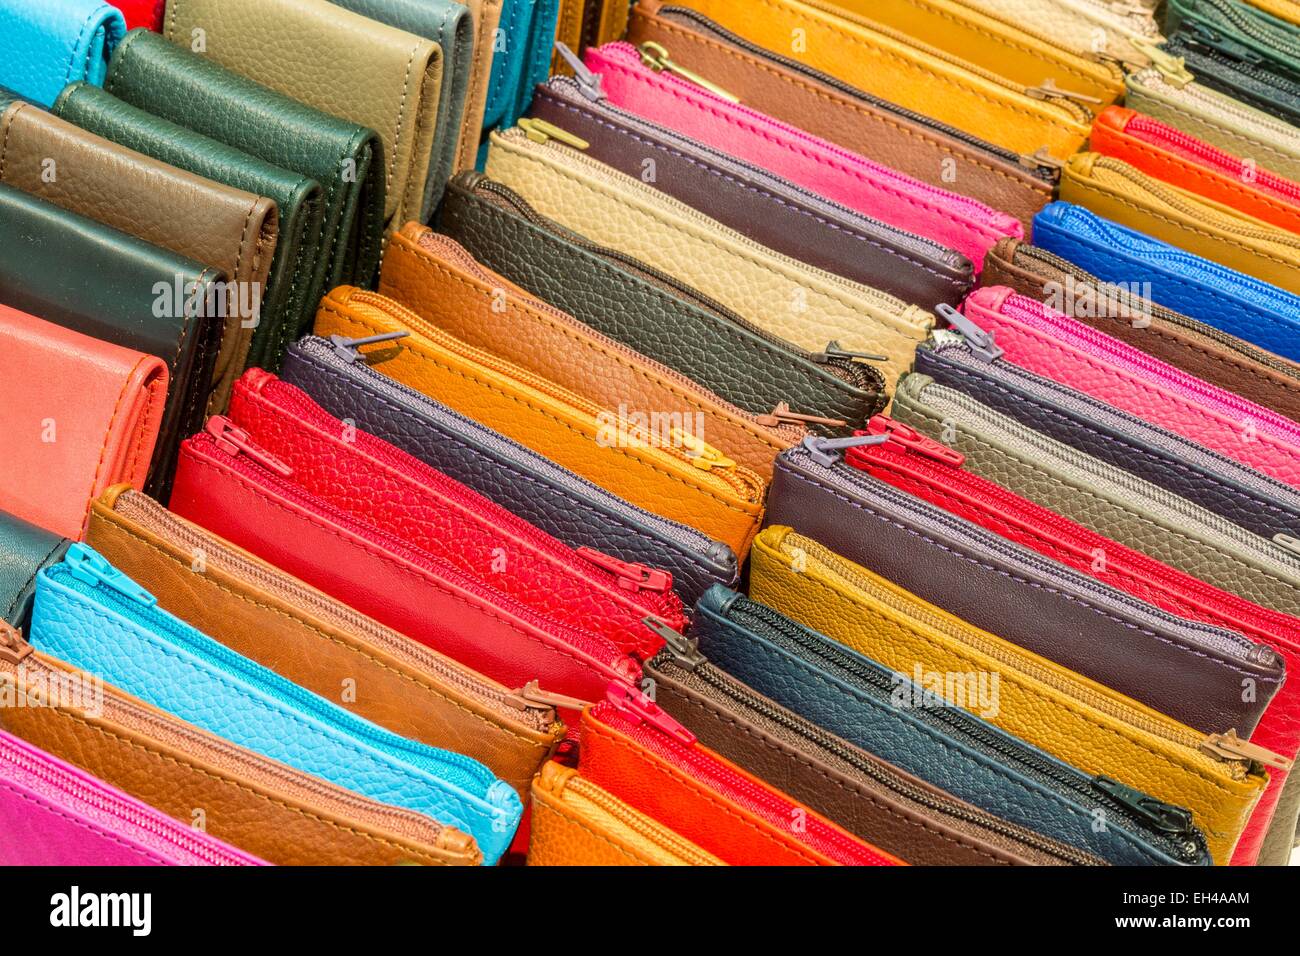 Le Maroc, Haut Atlas, Marrakech, ville impériale Gueliz, tanneurs, Galerie marque boutique sacs en cuir fabriqués localement Banque D'Images